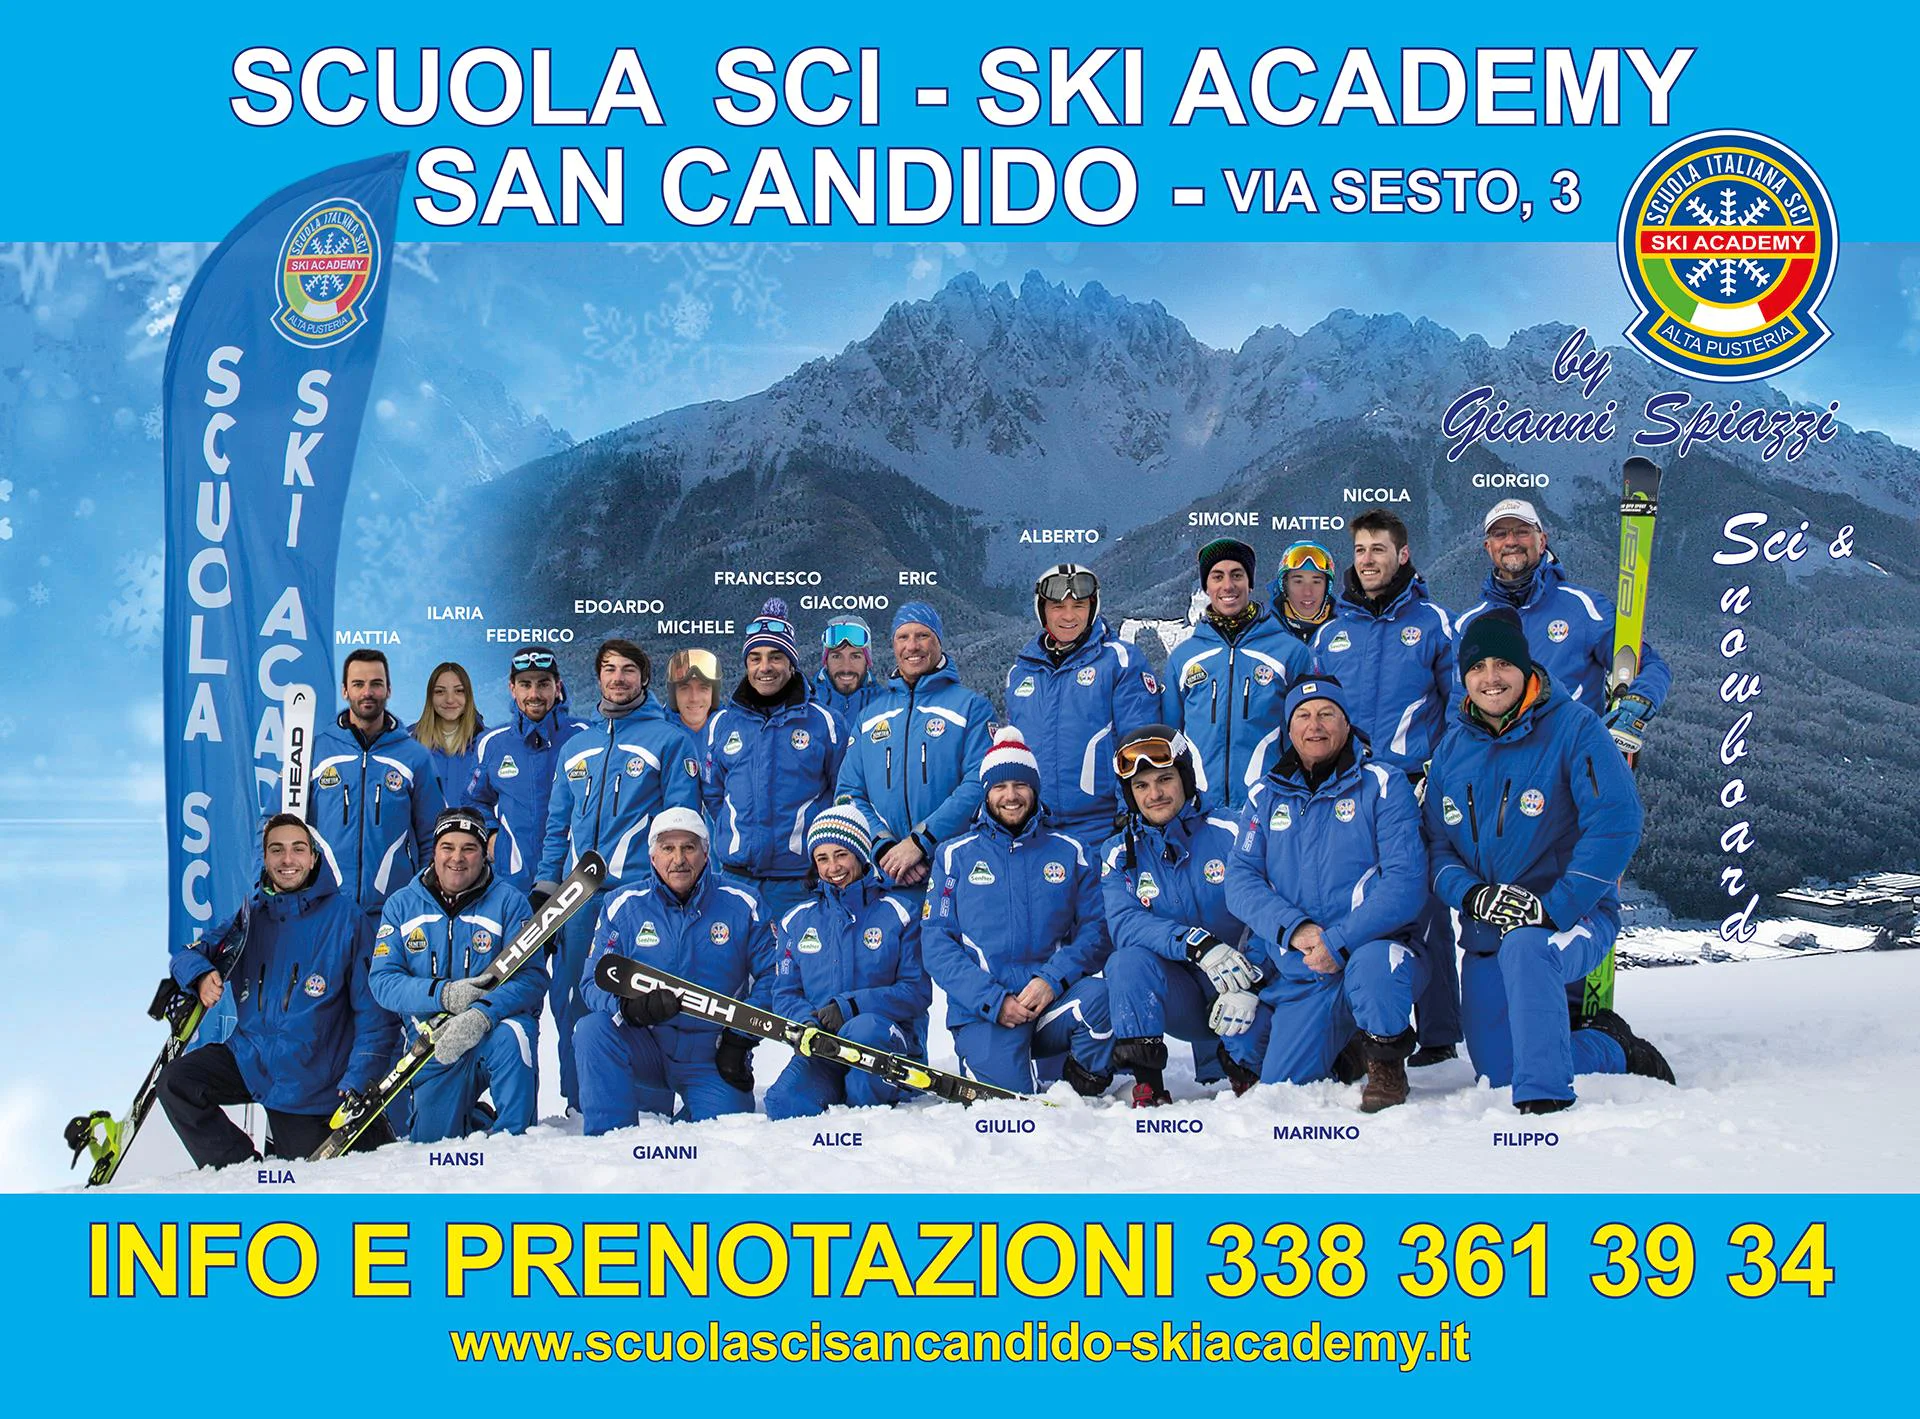 Ski Academy Alta Pusteria by Gianni Spiazzi San Candido 1 suedtirol.info